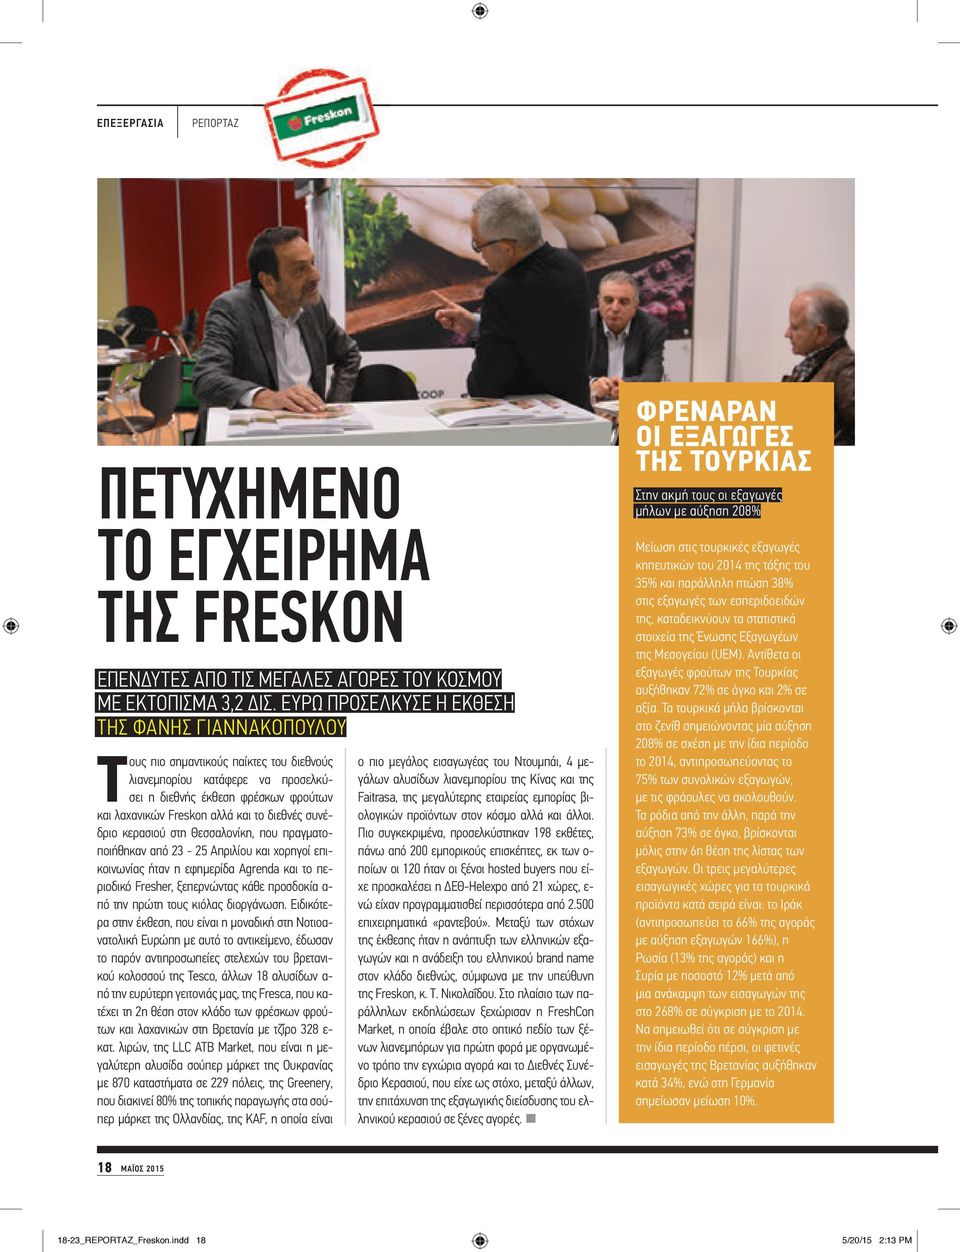 διεθνές συνέδριο κερασιού στη Θεσσαλονίκη, που πραγματοποιήθηκαν από 23-25 Απριλίου και χορηγοί επικοινωνίας ήταν η εφημερίδα Agrenda και το περιοδικό Fresher, ξεπερνώντας κάθε προσδοκία α- πό την